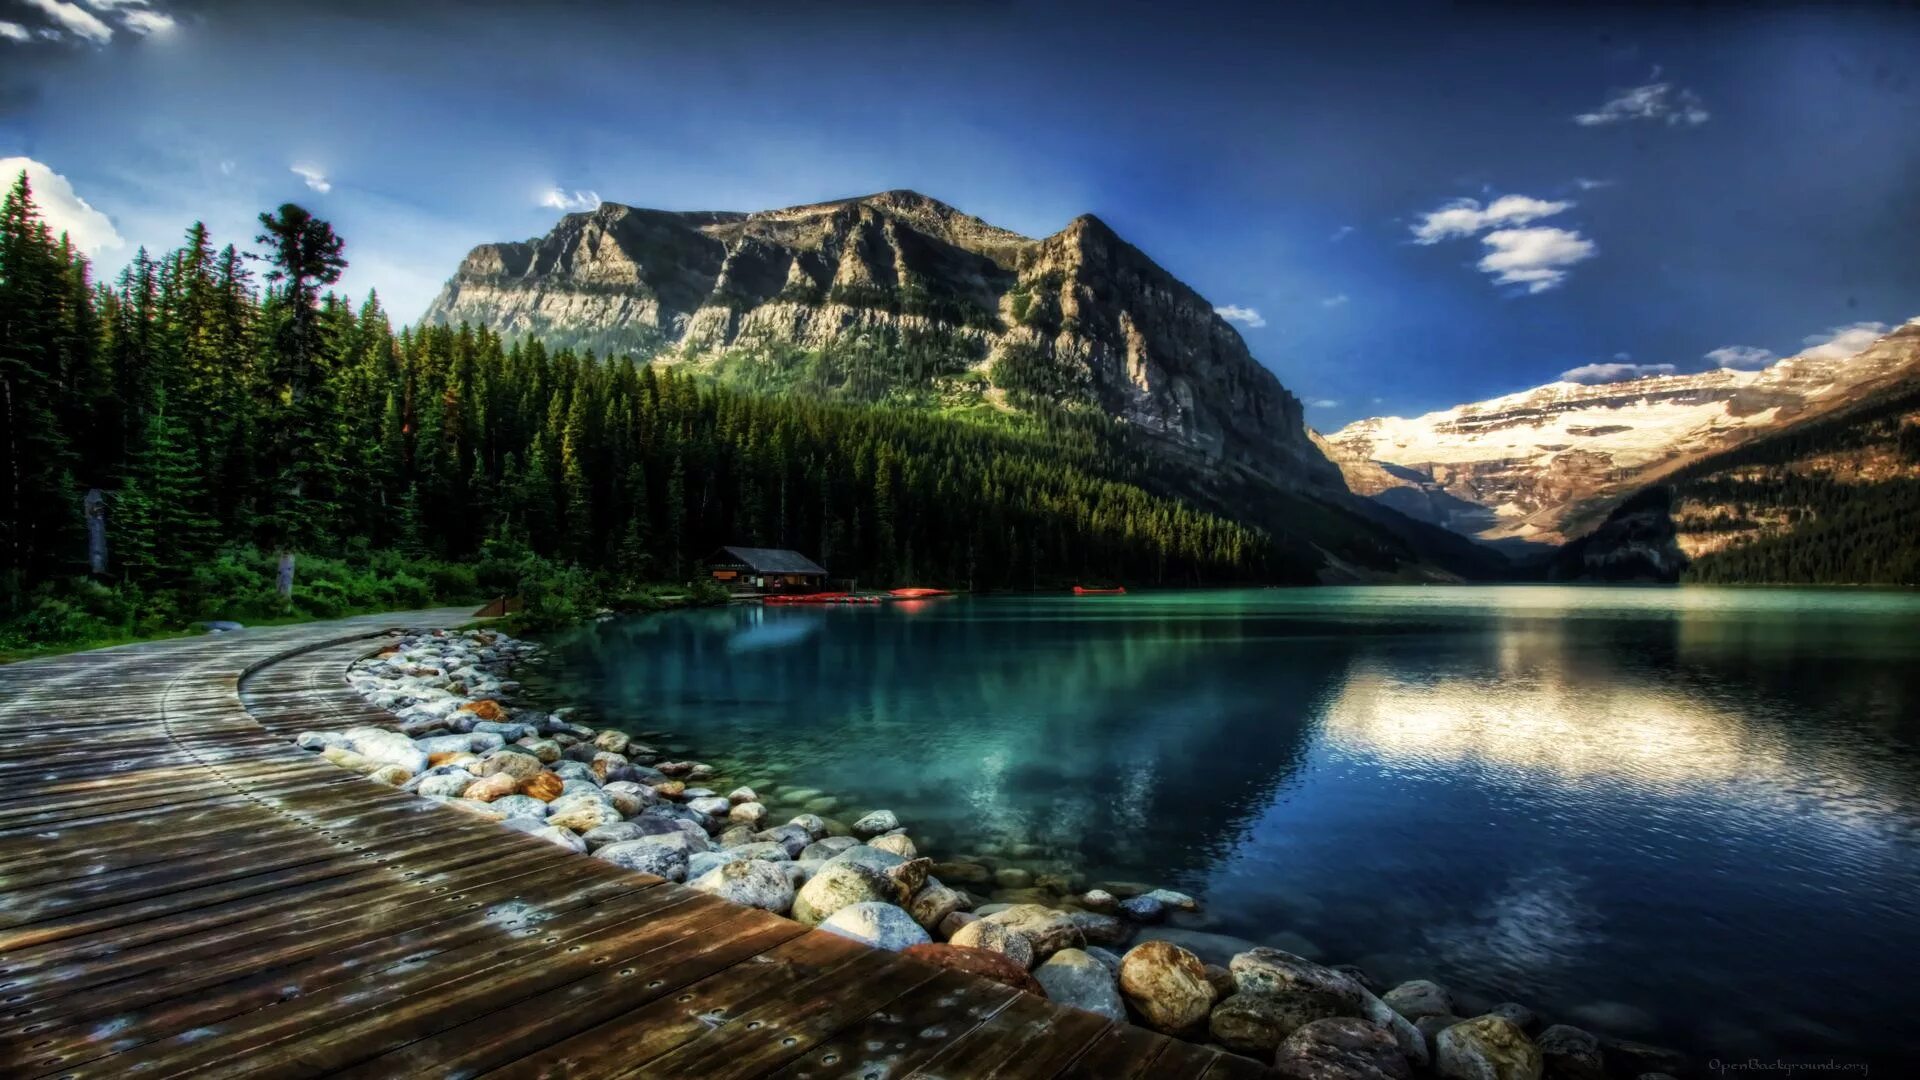 Большие бесплатные картинки красивые. Национальный парк Банф, Канада. Озеро Луиз Канада. Озеро Морейн Канада 1920х1080. Ледниковое озеро Морейн, Канада.